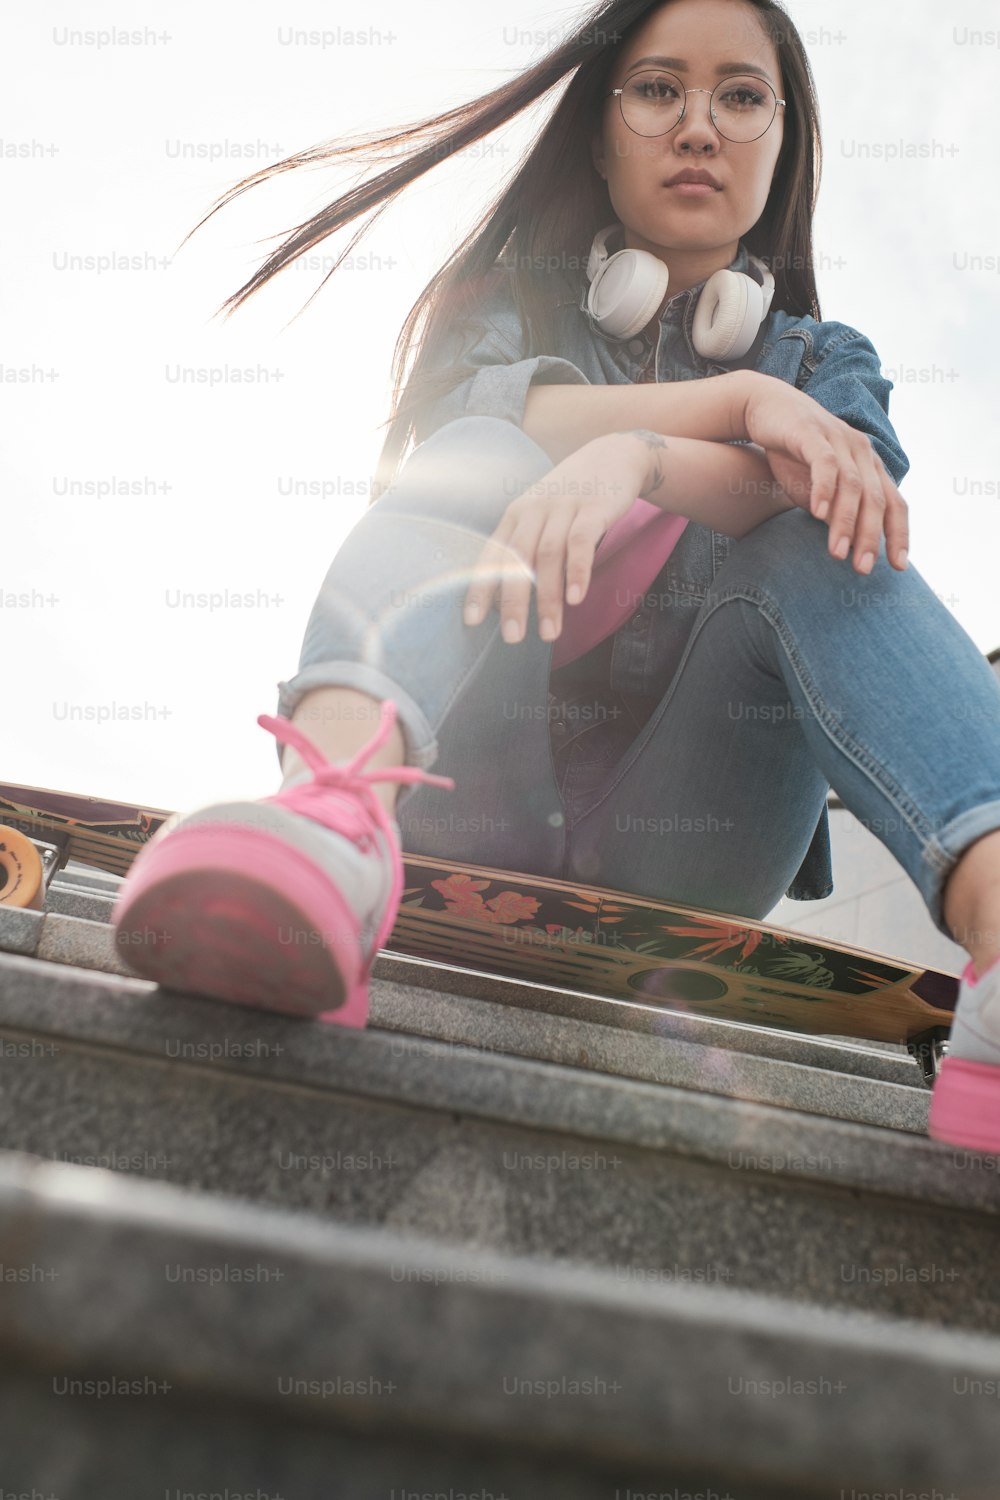 어린 소녀는 롱보드를 들고 바깥 계단에 앉는 모습을 아래에서 촬영했습니다.